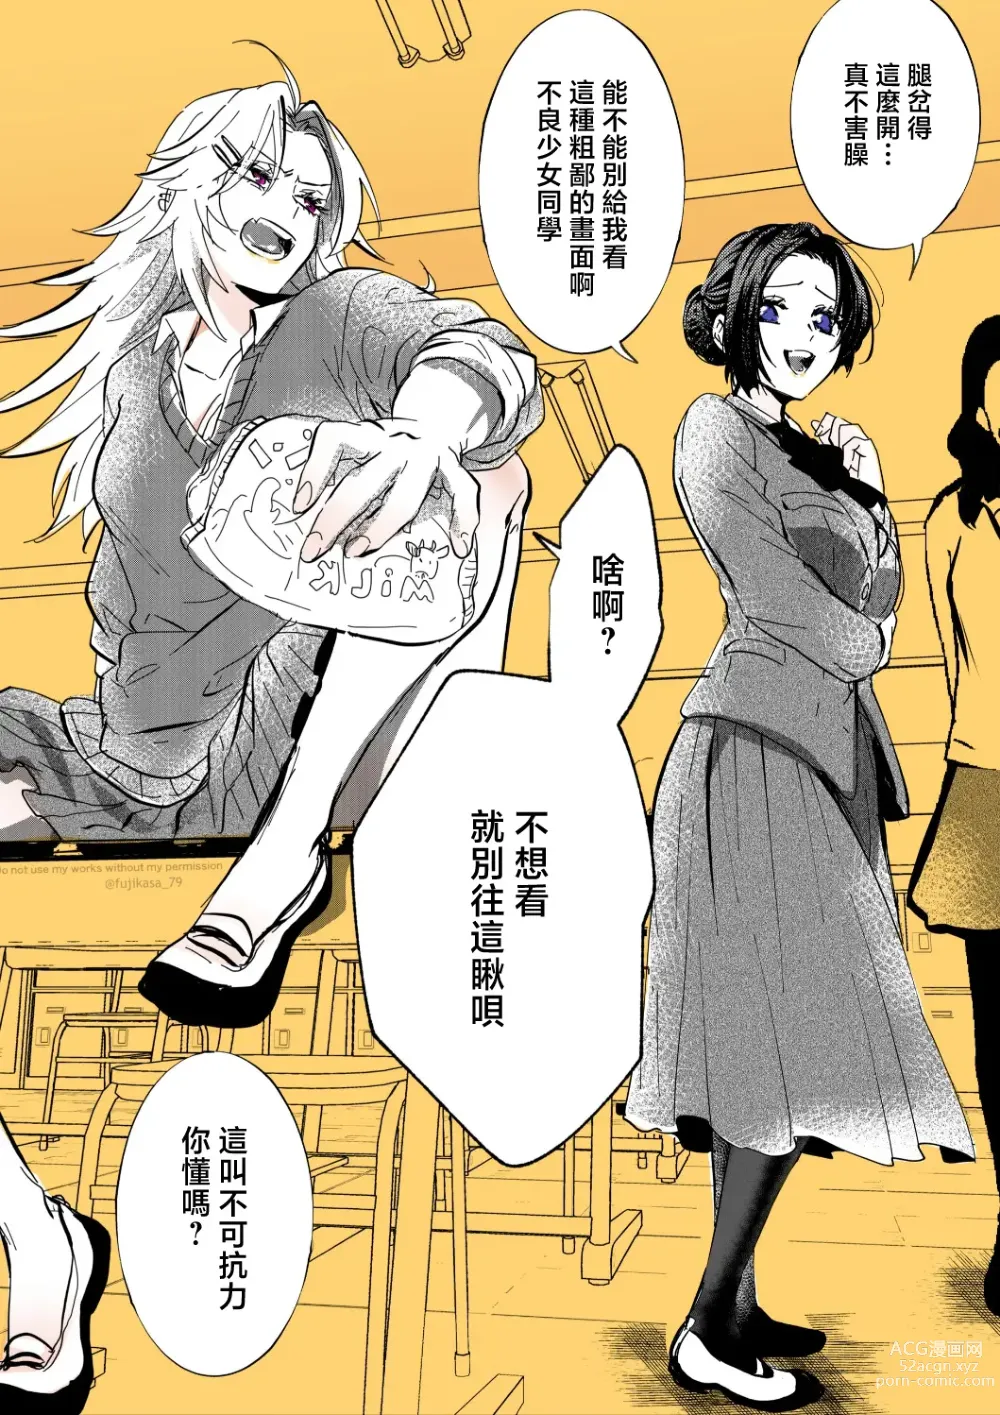 Page 2 of manga 不良少女与委员长关系不好全是演戏